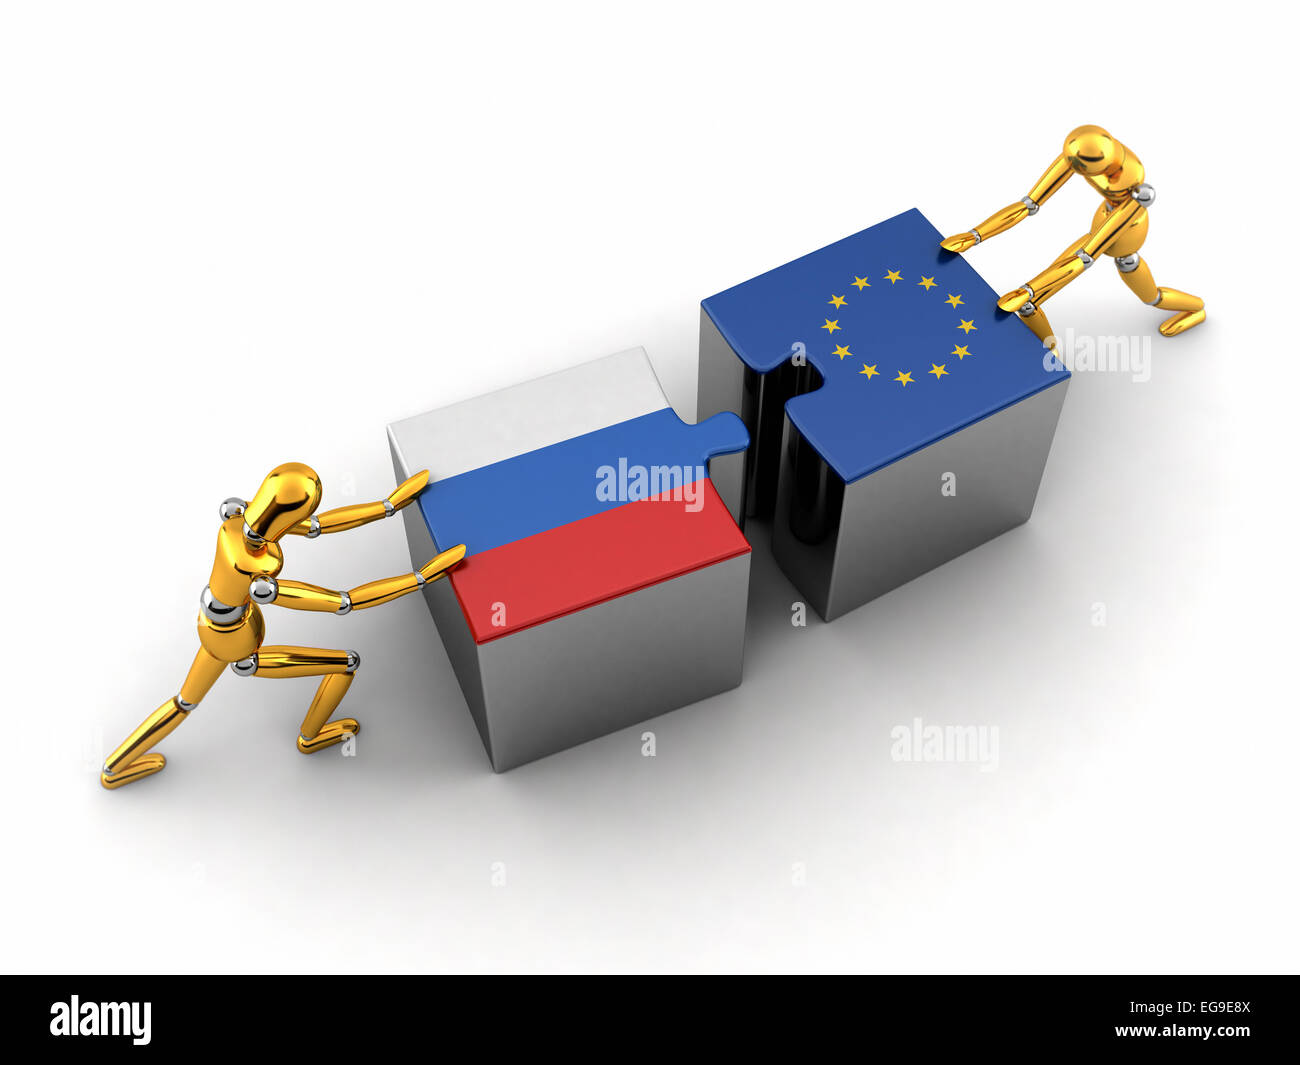 Politische oder finanzielle Konzept von Russland zu kämpfen und eine Lösung mit der Europäischen Union zu finden. Stockfoto